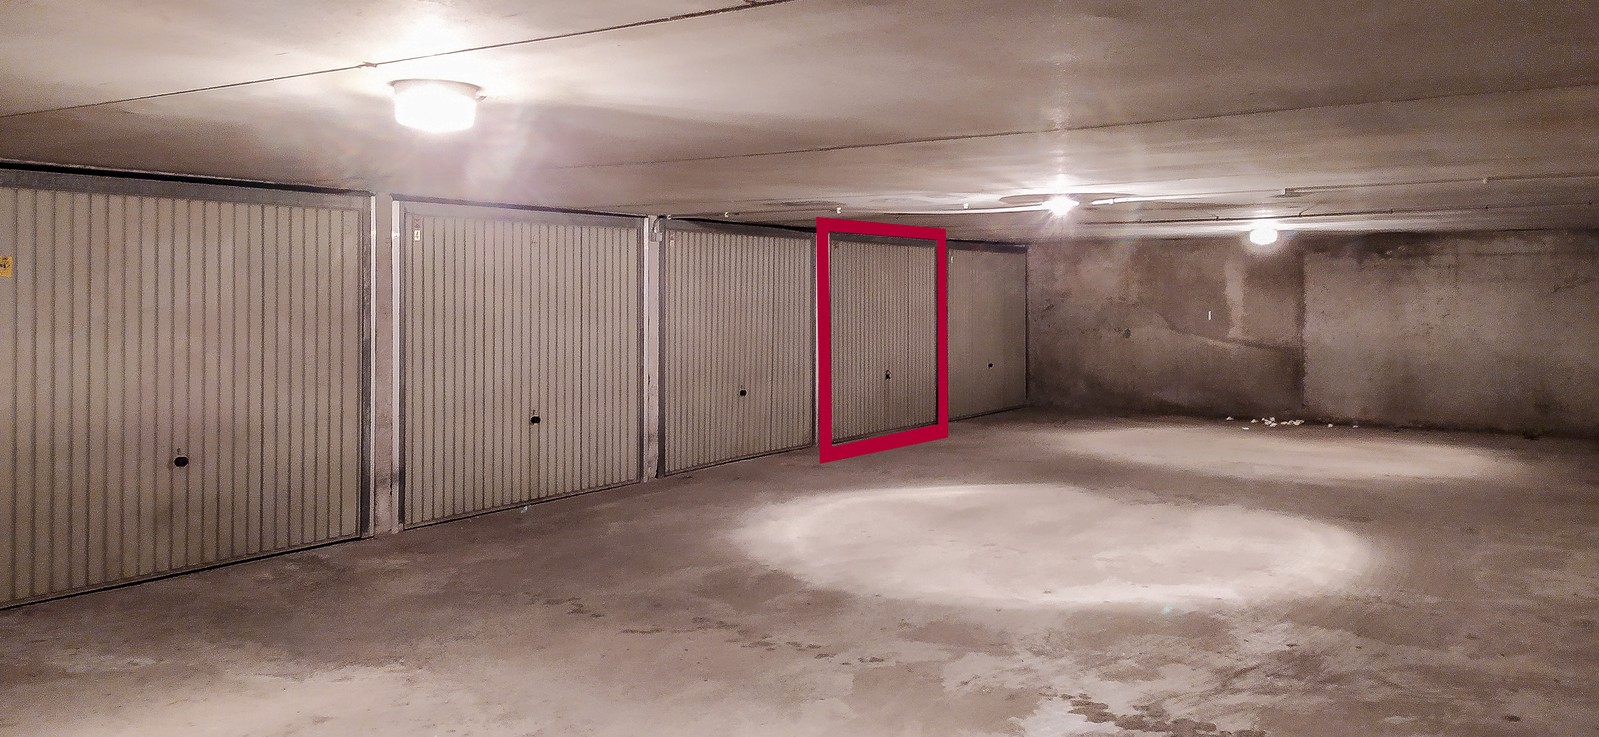 Garage box facilement accessible et situé au centre